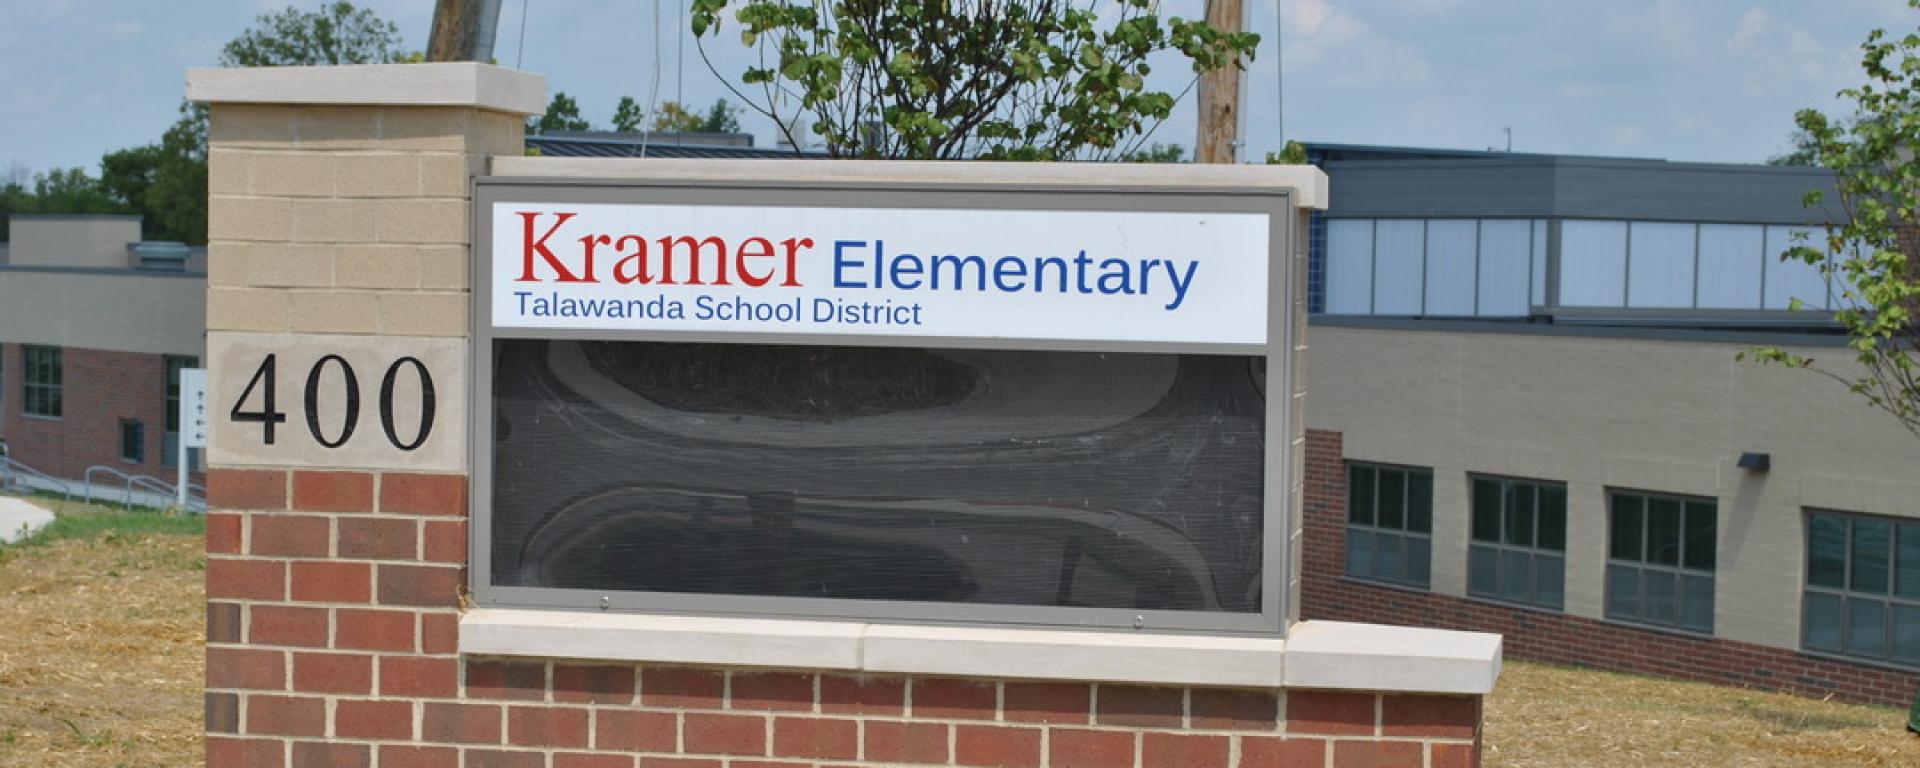 Kramer Elementary